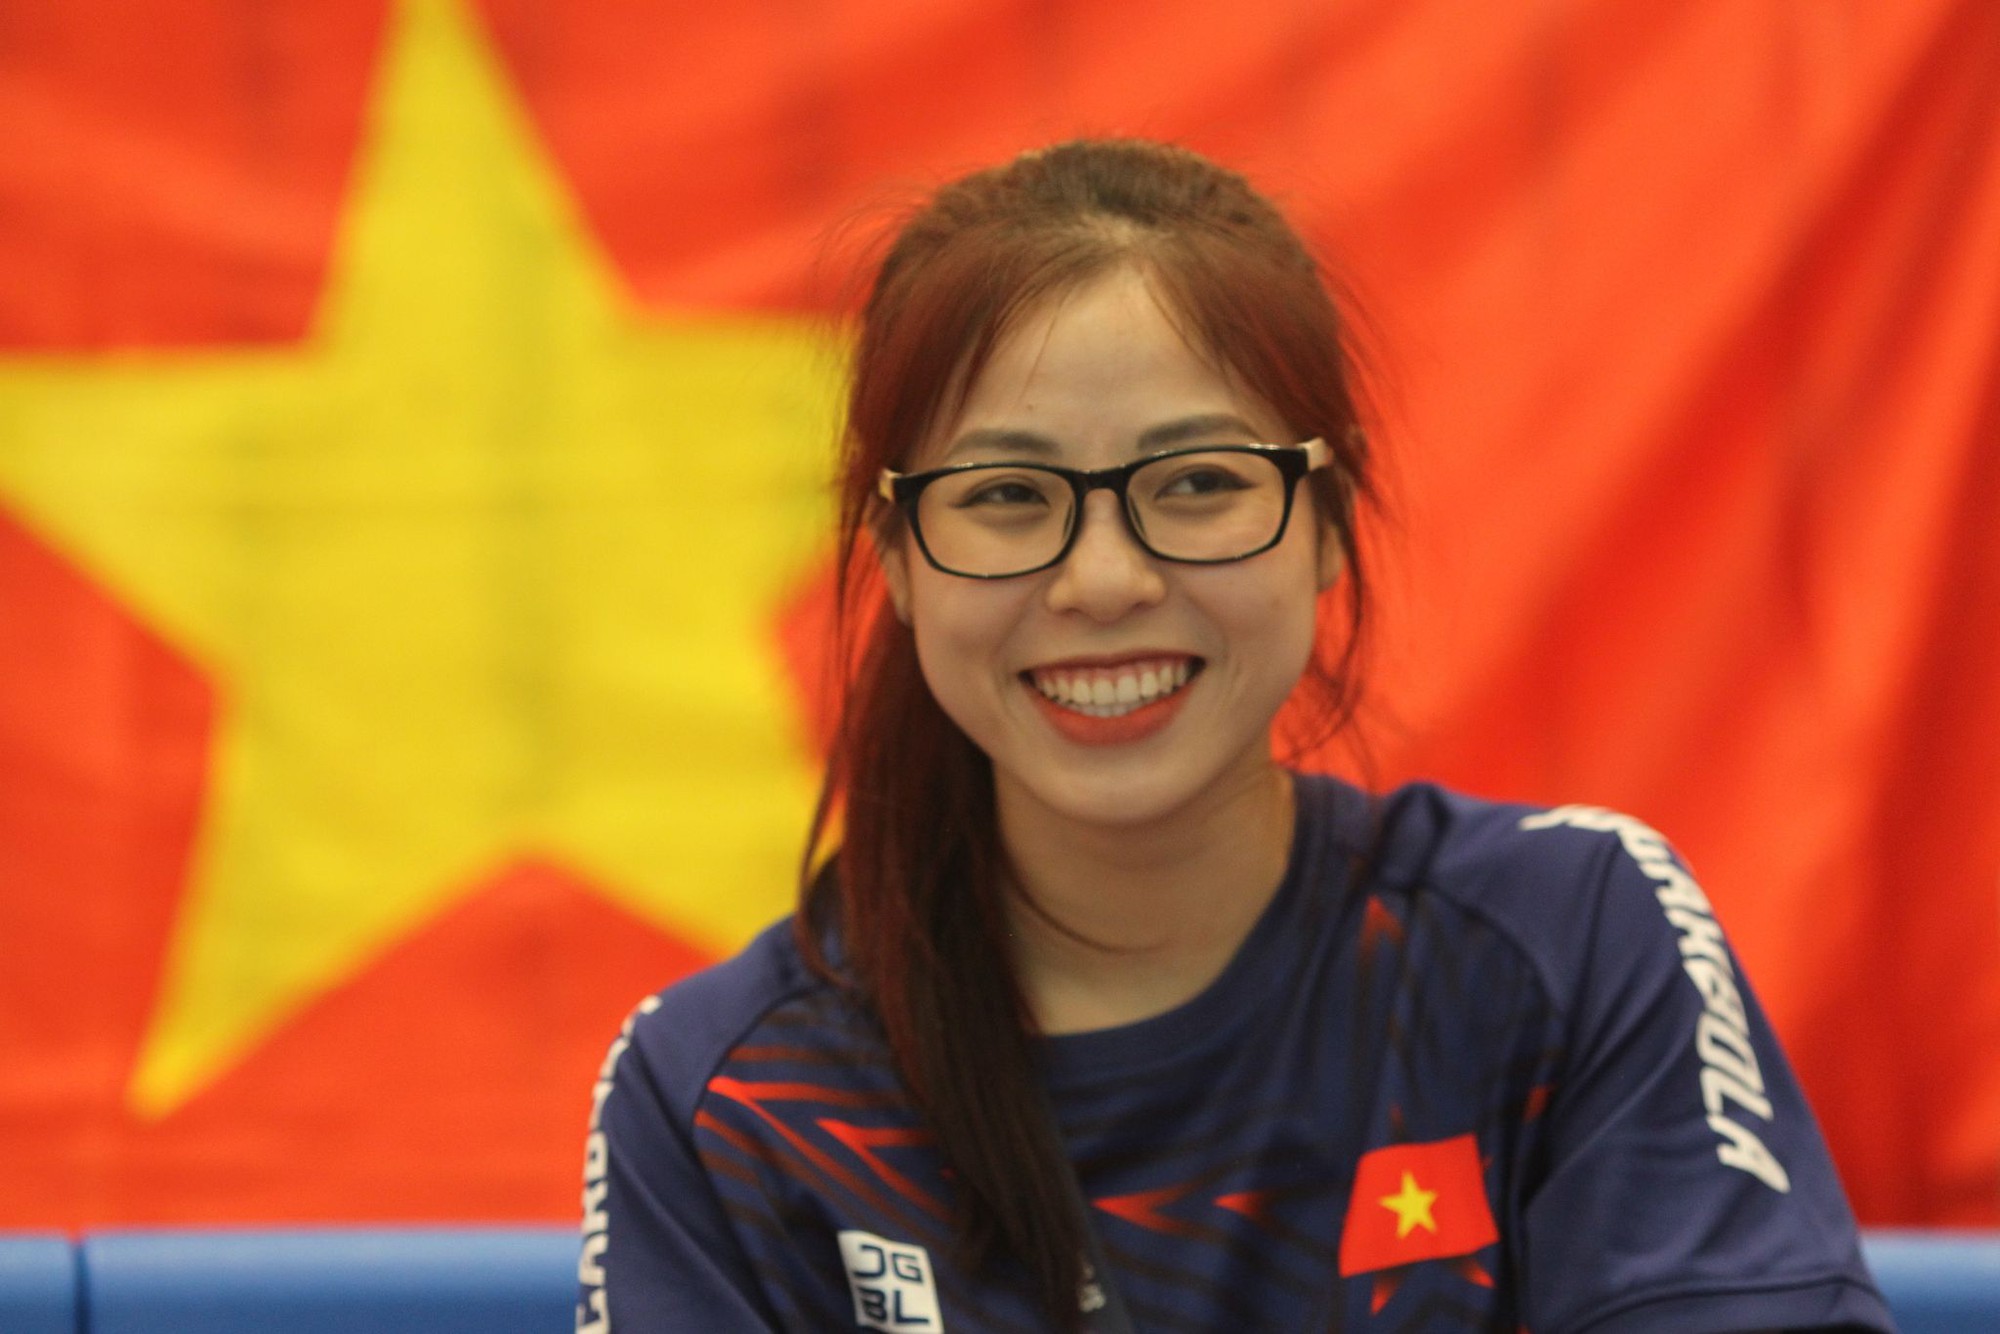 Nữ võ sĩ Việt Nam gây xao xuyến tại SEA Games với nhan sắc dễ thương, cuốn hút khán giả - Ảnh 4.